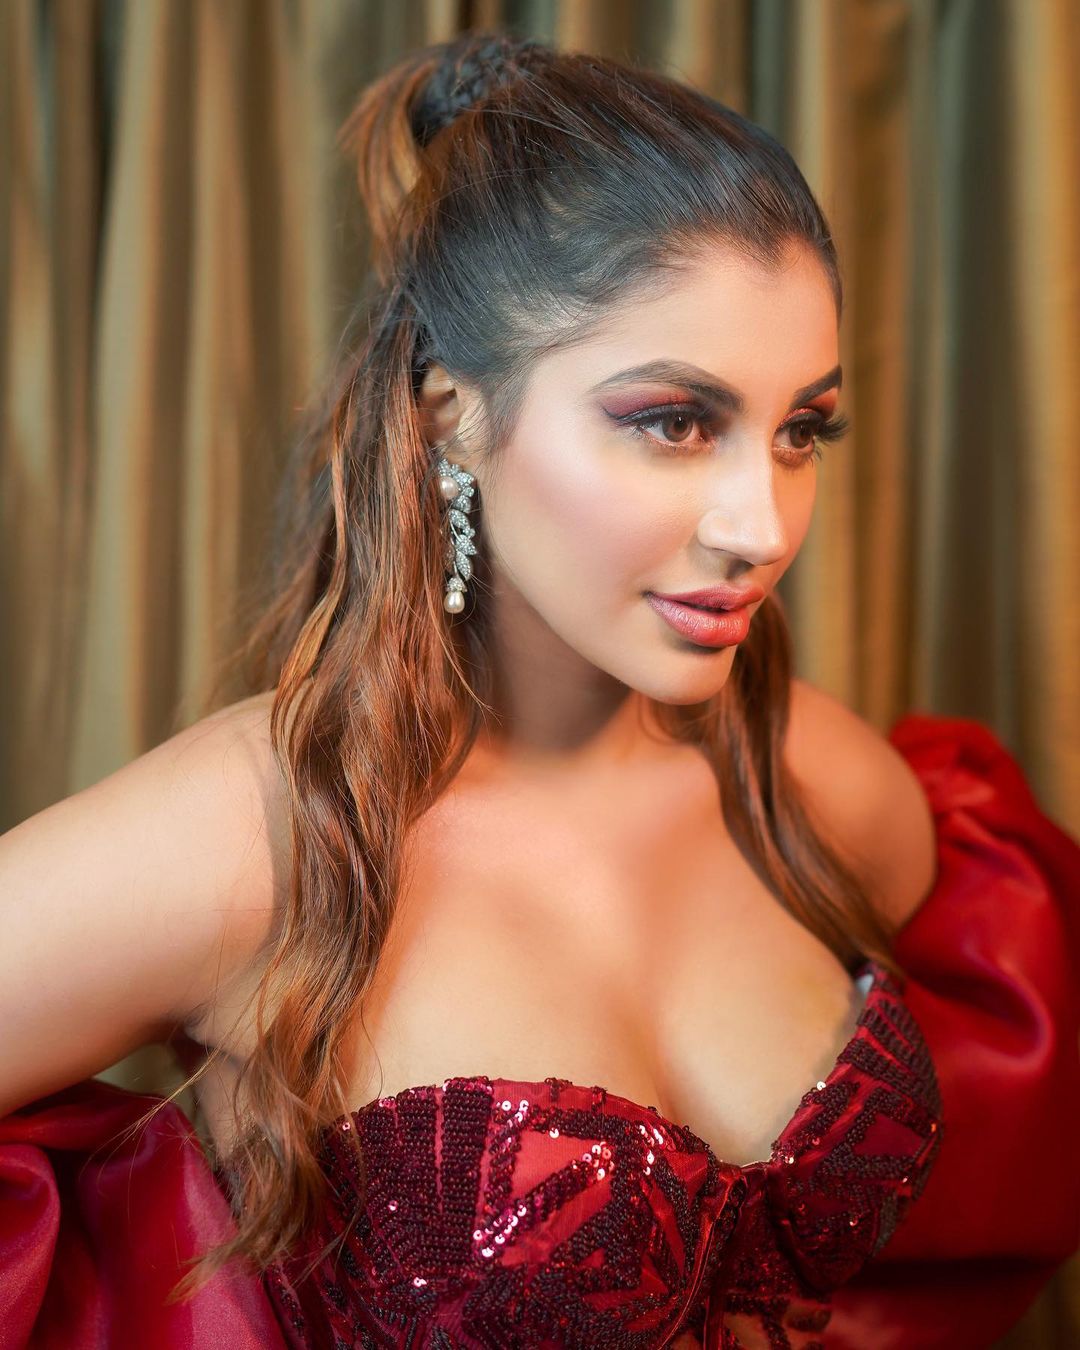  நடிகை யாஷிகா ஆனந்த் ( Image : Instagram @yashikaaannand)